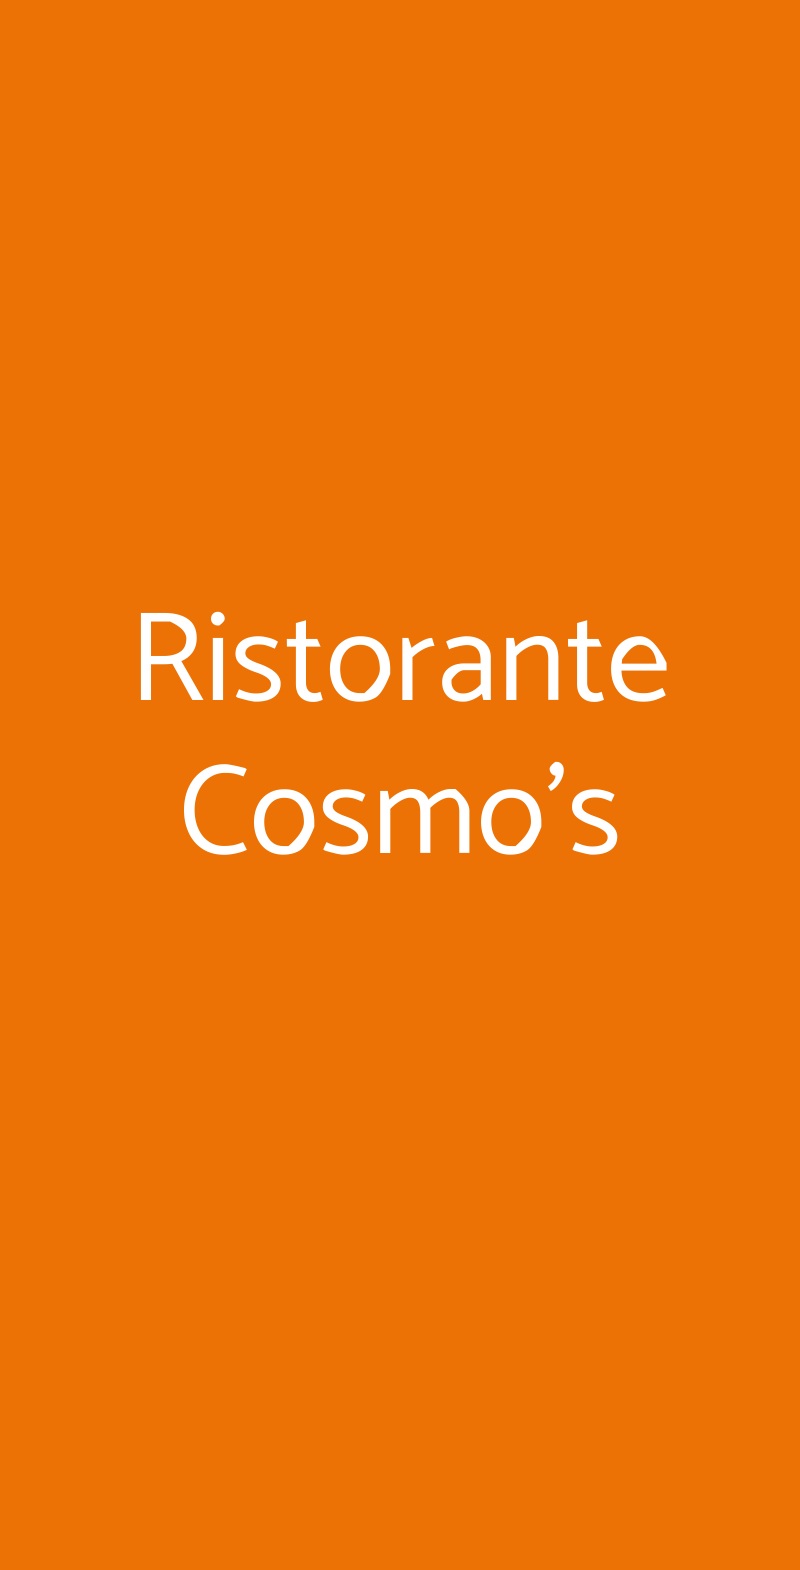 Ristorante Cosmo's Bologna menù 1 pagina